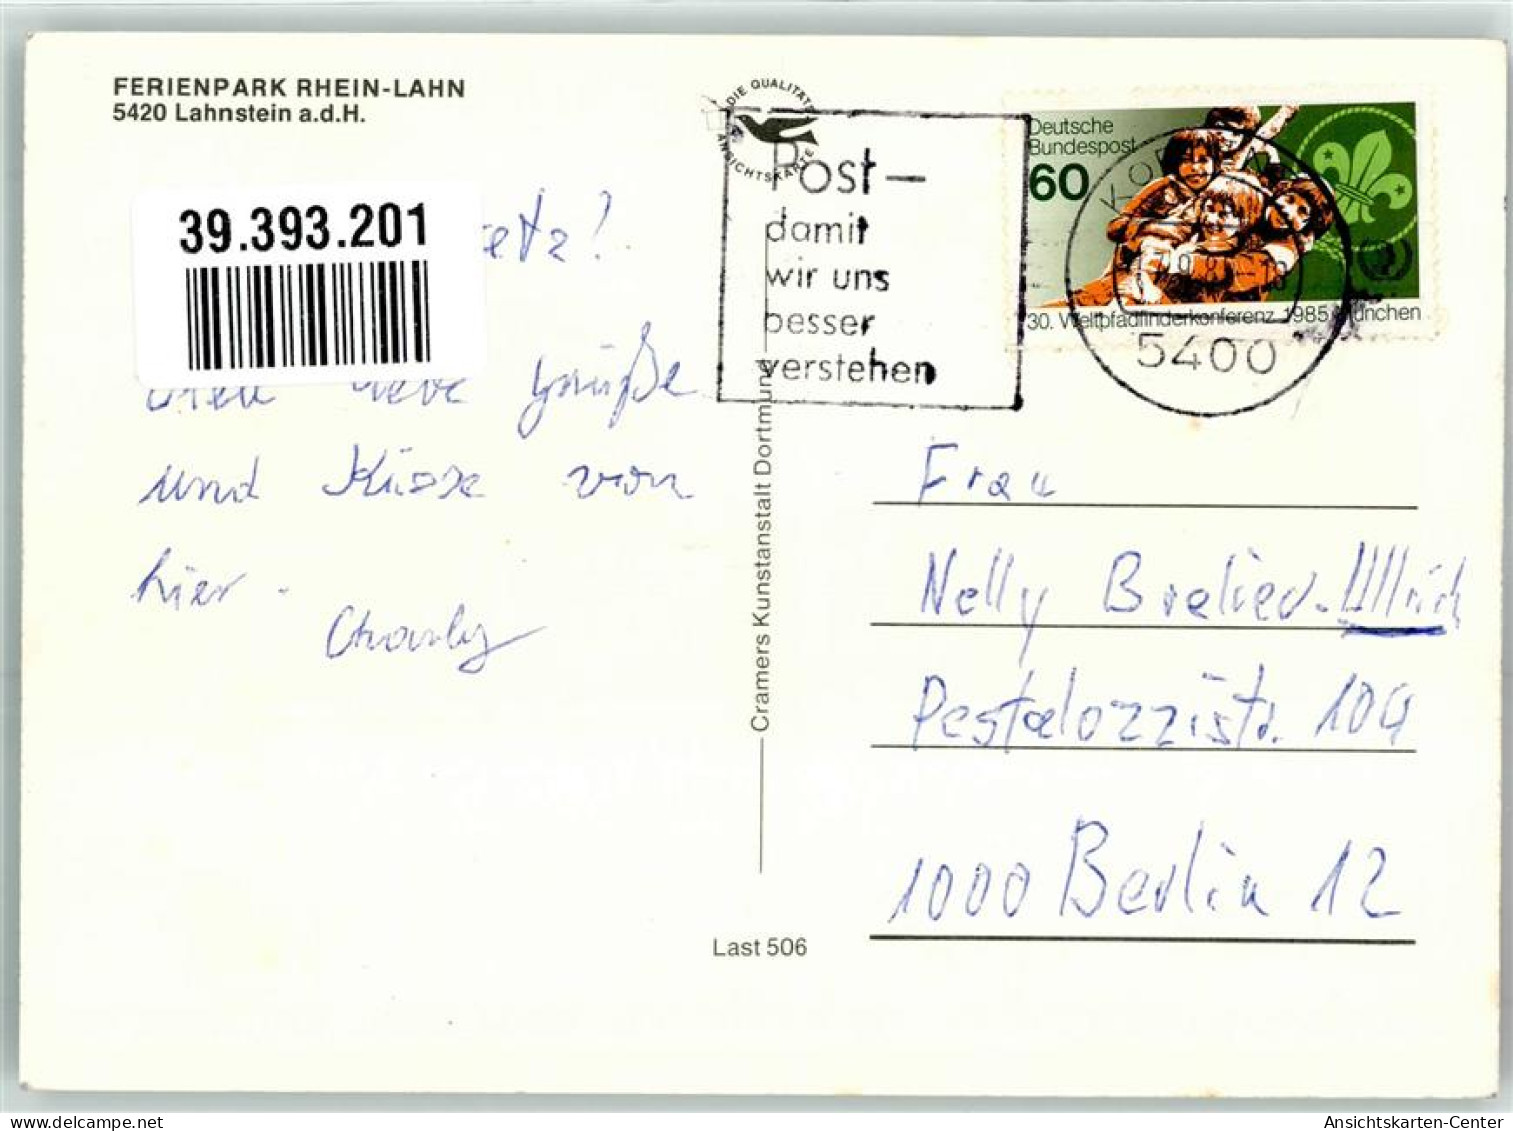 39393201 - Lahnstein - Lahnstein